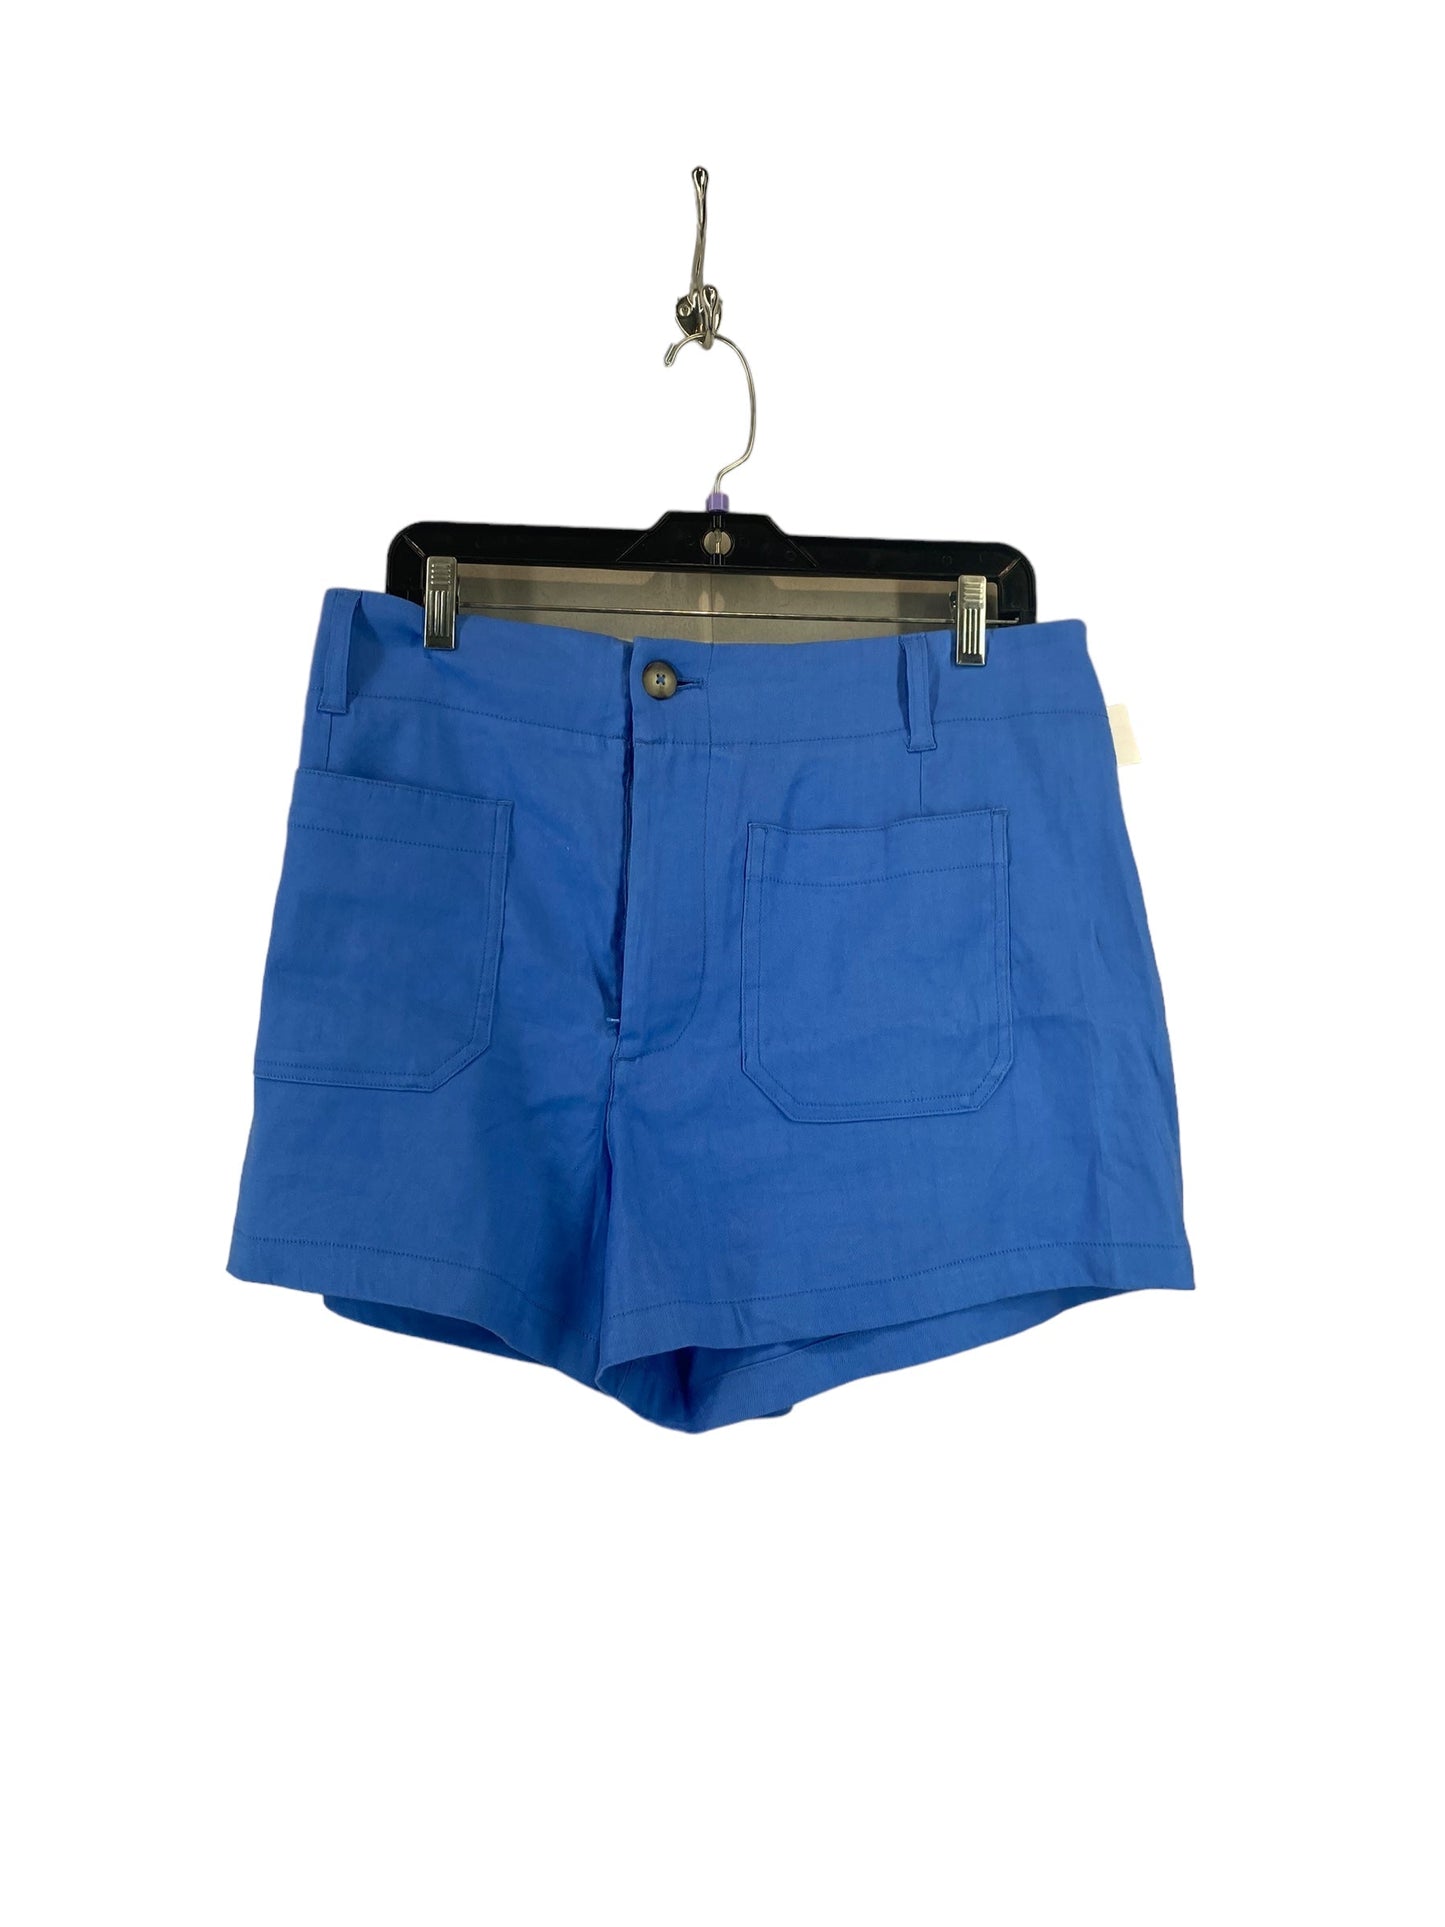 Blue Shorts Maeve, Size 32